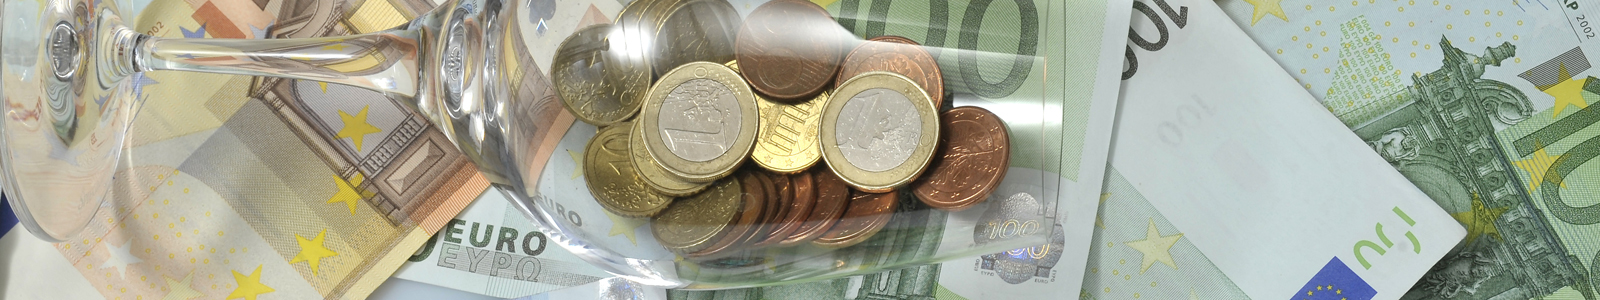 Euroscheine und Münzen im Weinglas ©DLR